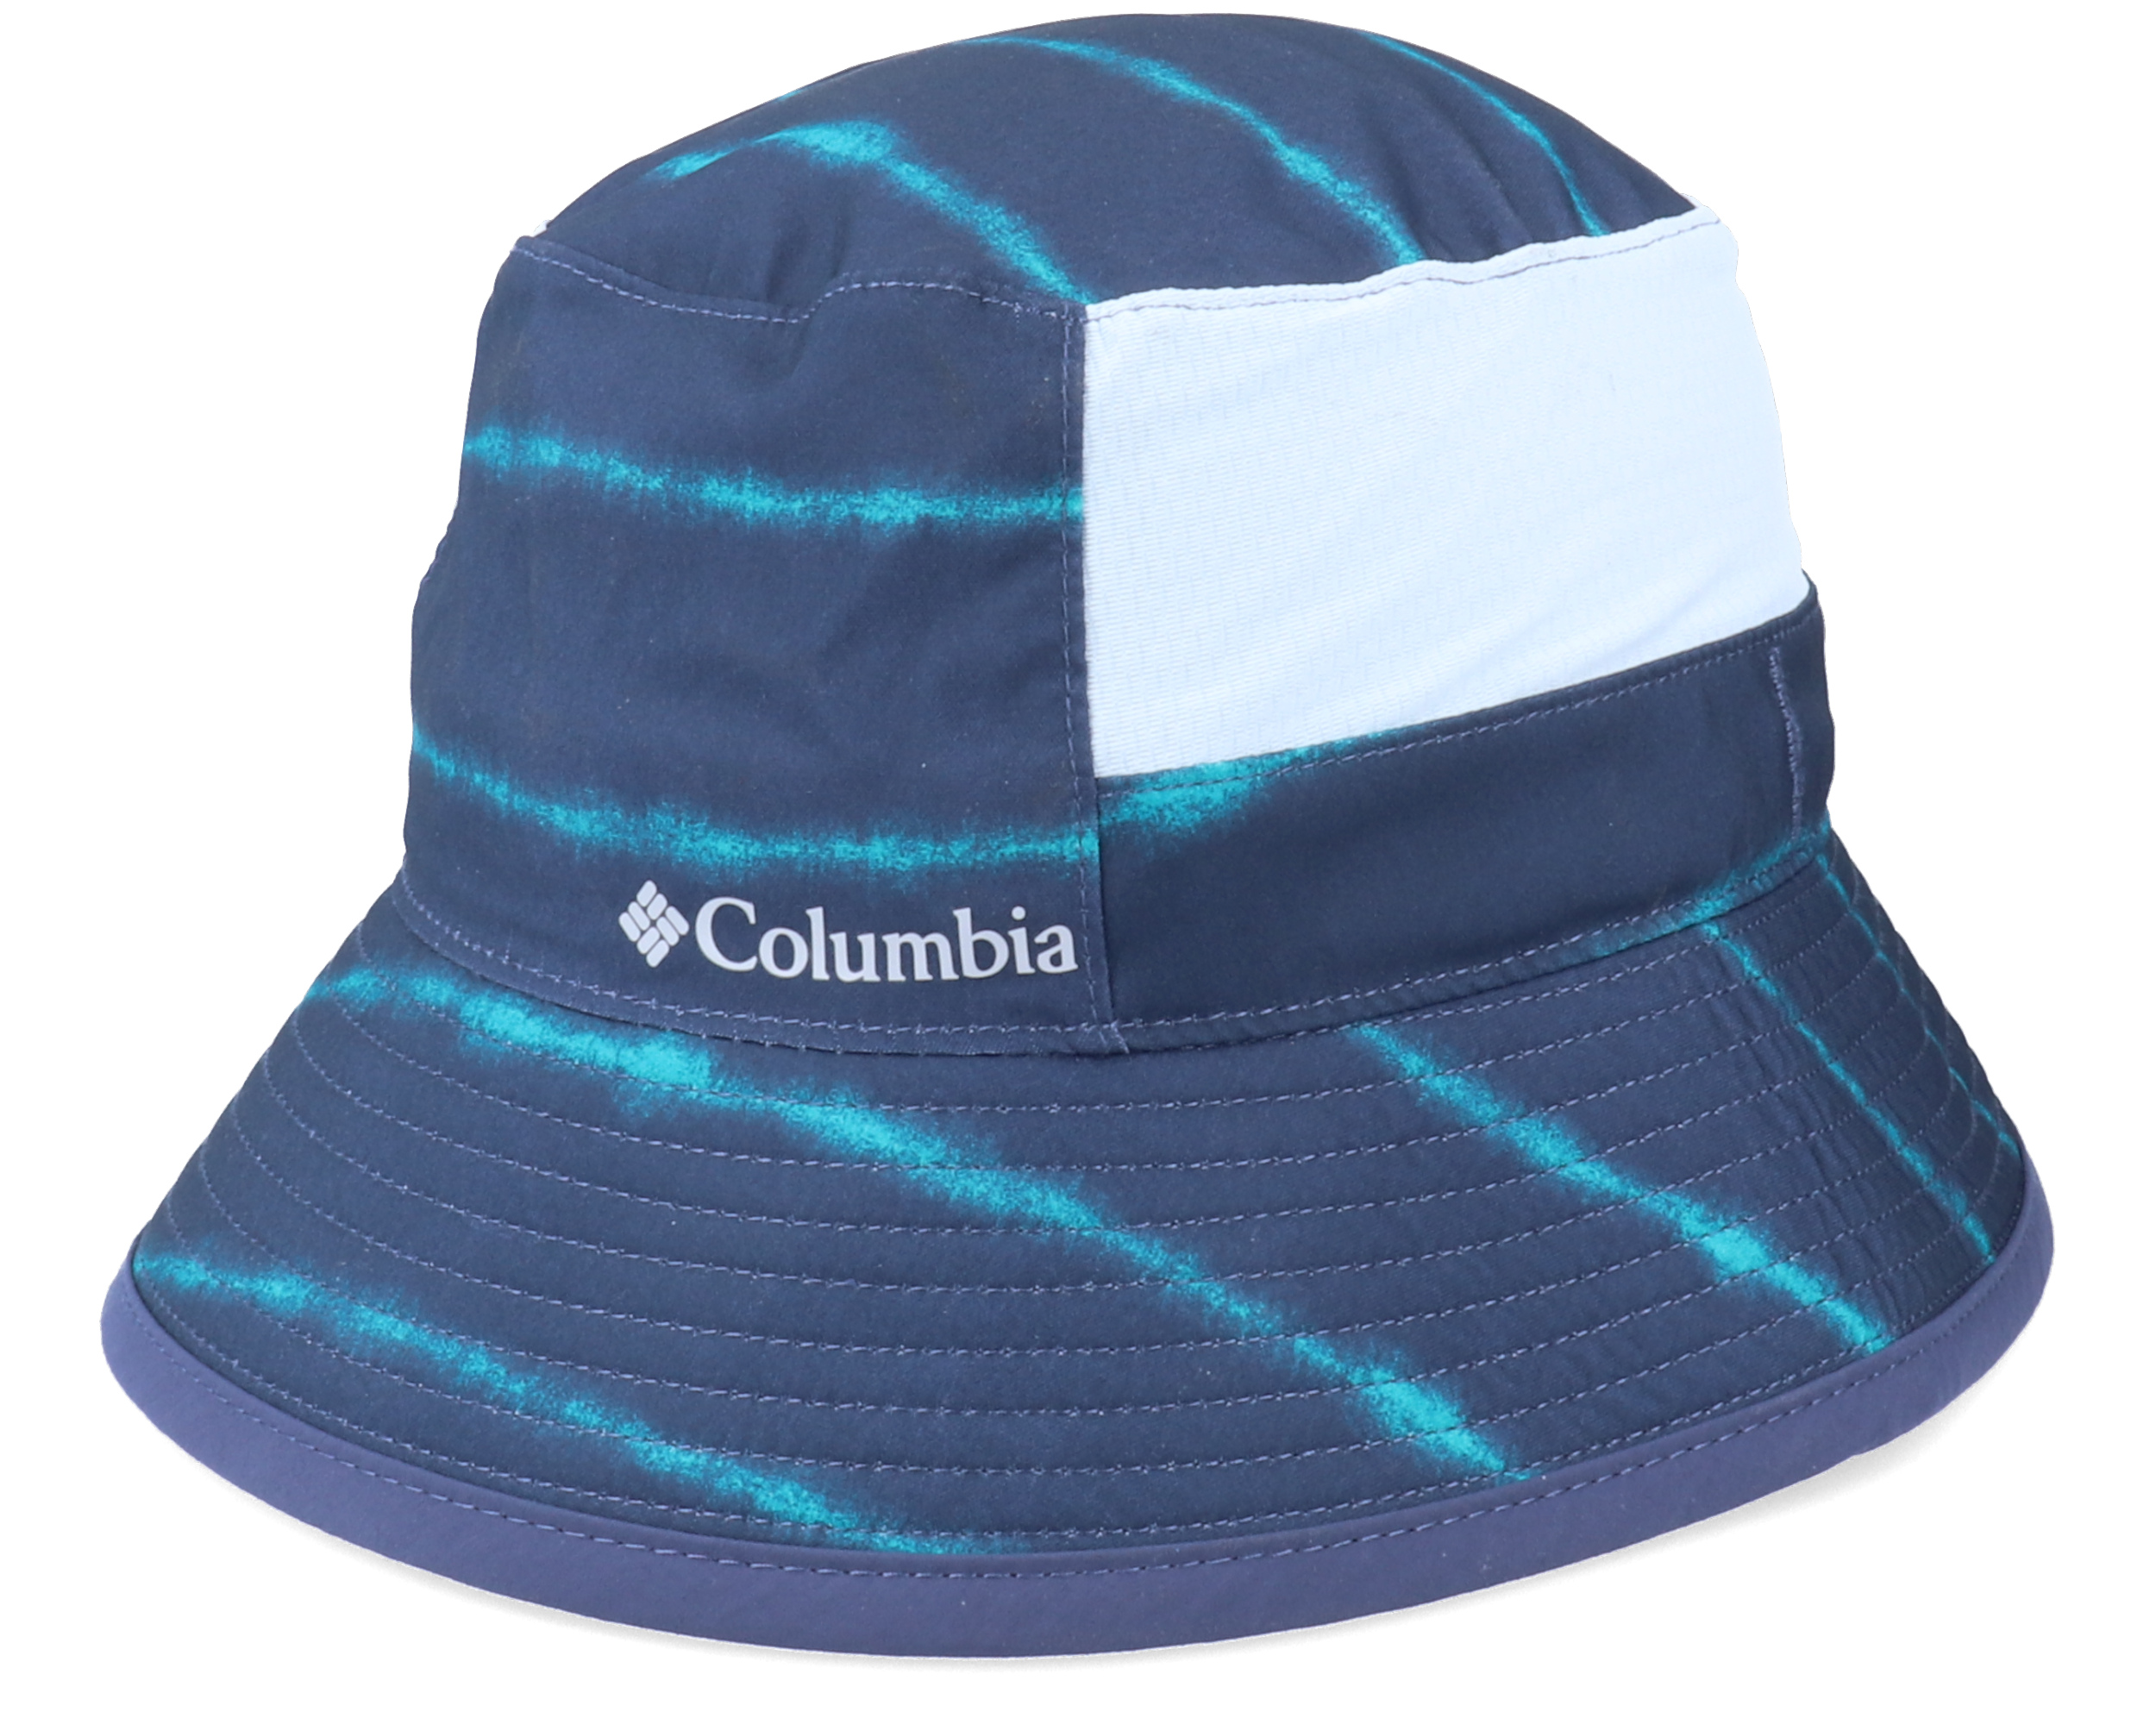 Kids Booney Nocturnal Bucket - Columbia hat